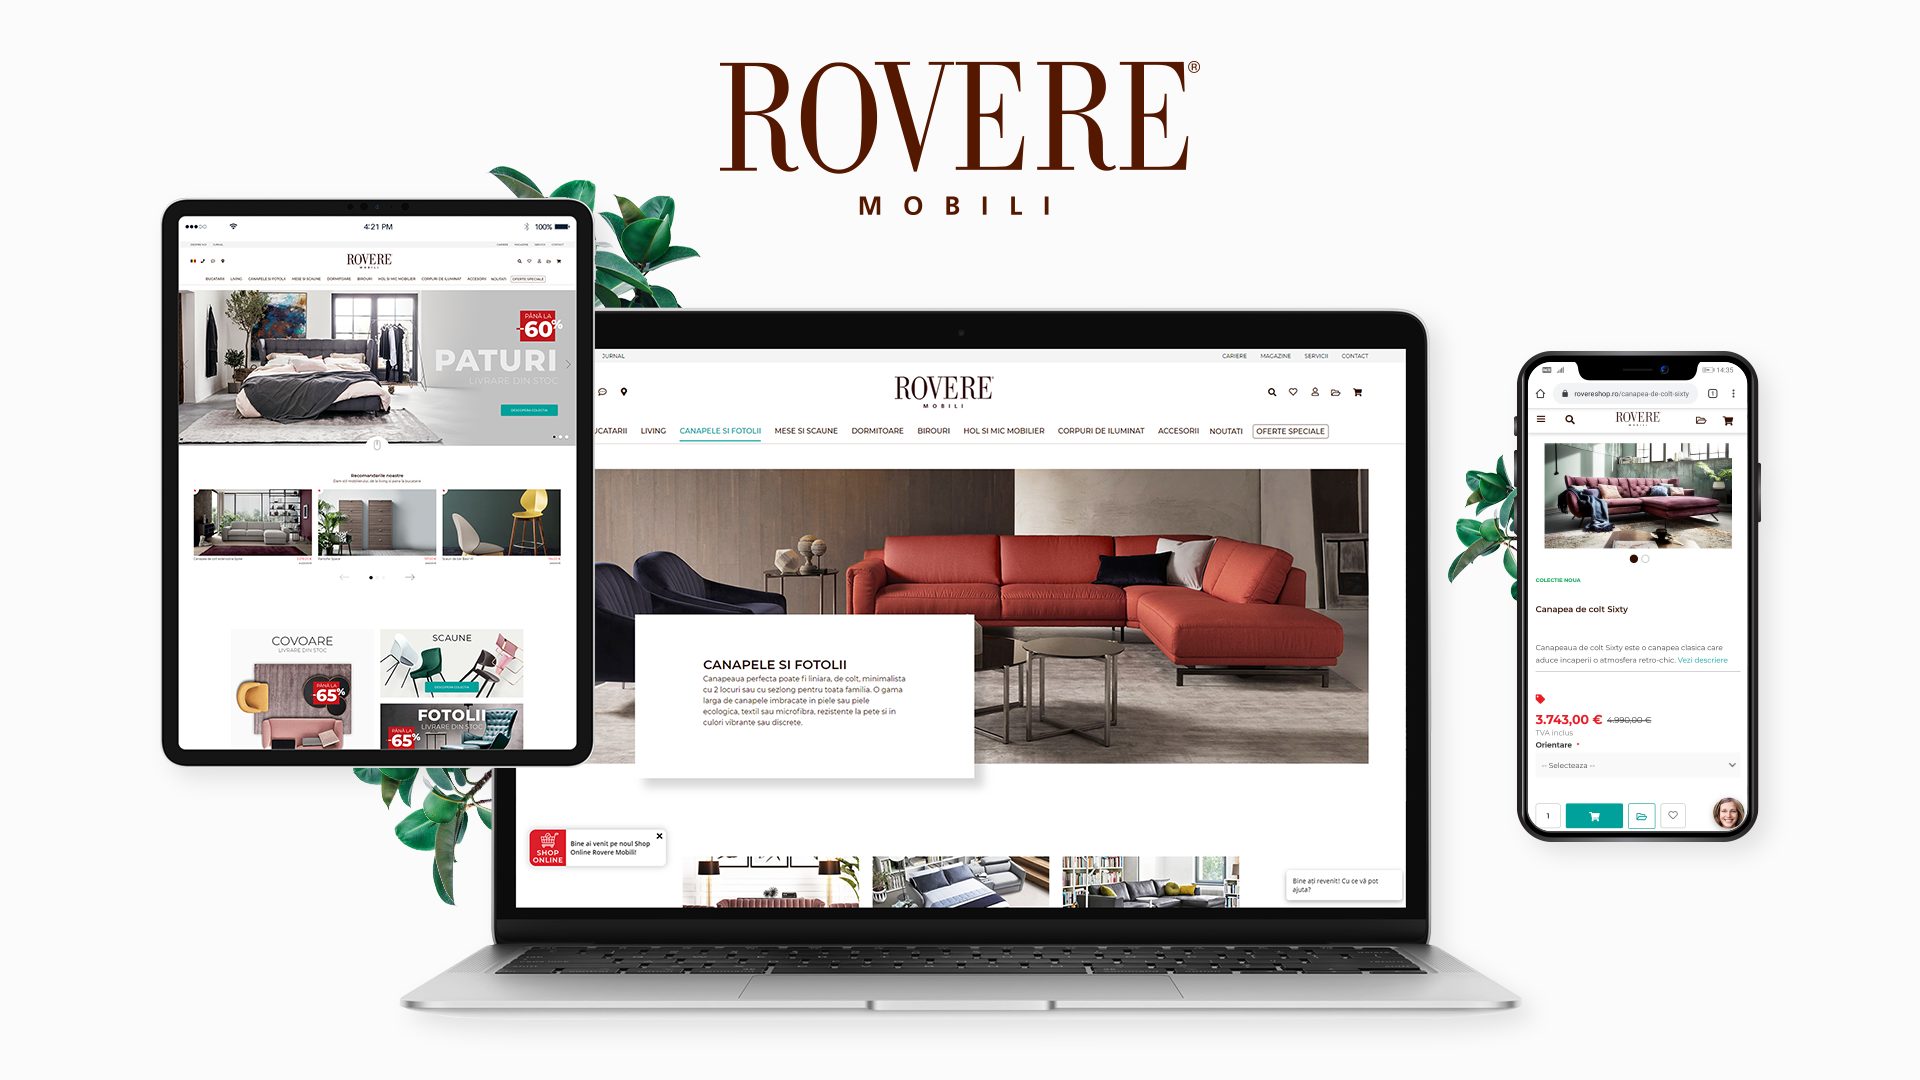 Rovere Eshop1920x1080 - Rovere Mobili lansează un magazin online pentru mobilier de lux